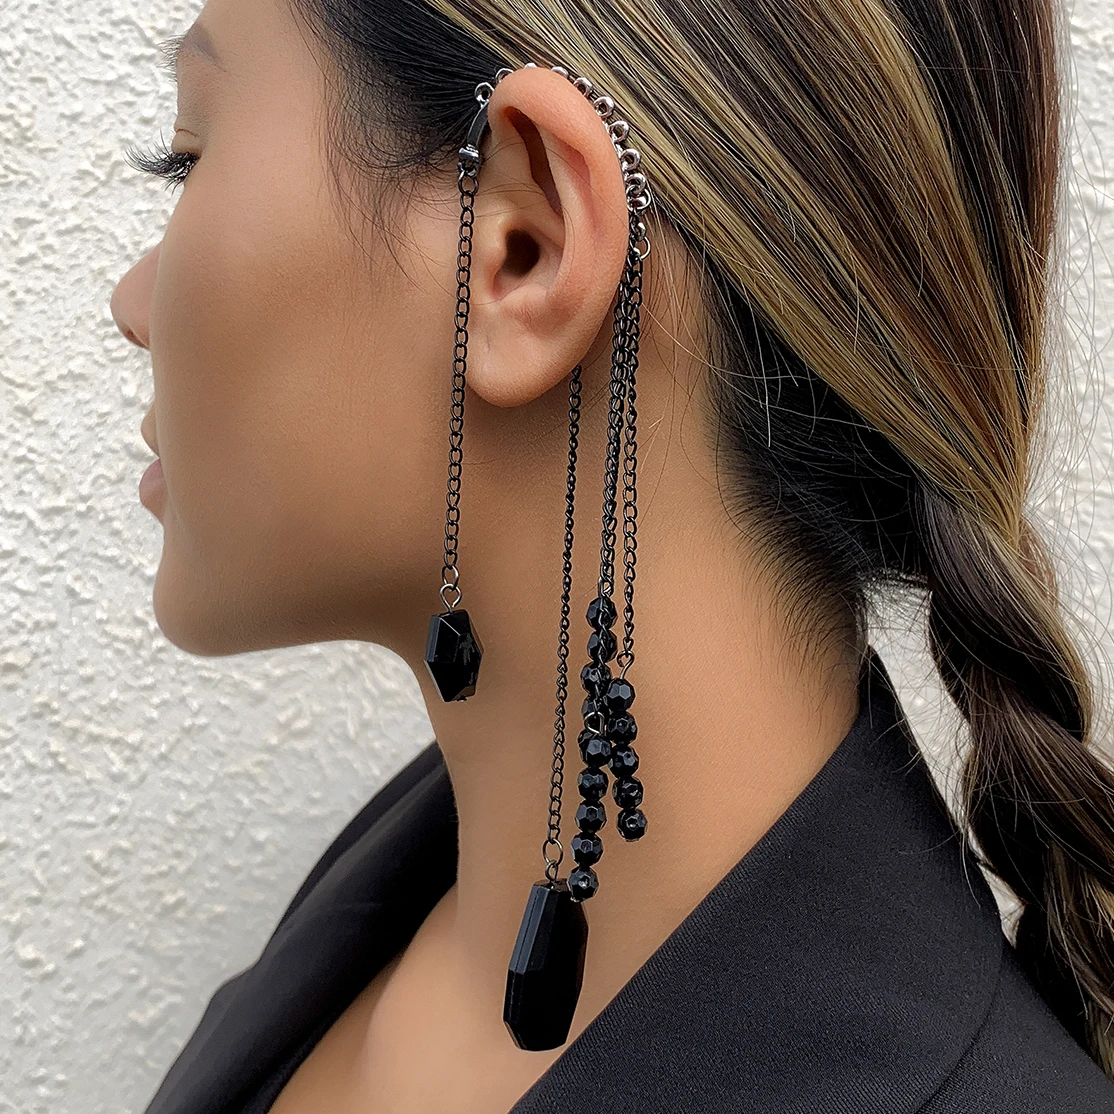 Ingemark Vintage Long Tassel Clip Earrings Black Acrylic Geometric Pendant No Piercing Women Ear Cuffs Goth Jewelry Accessories